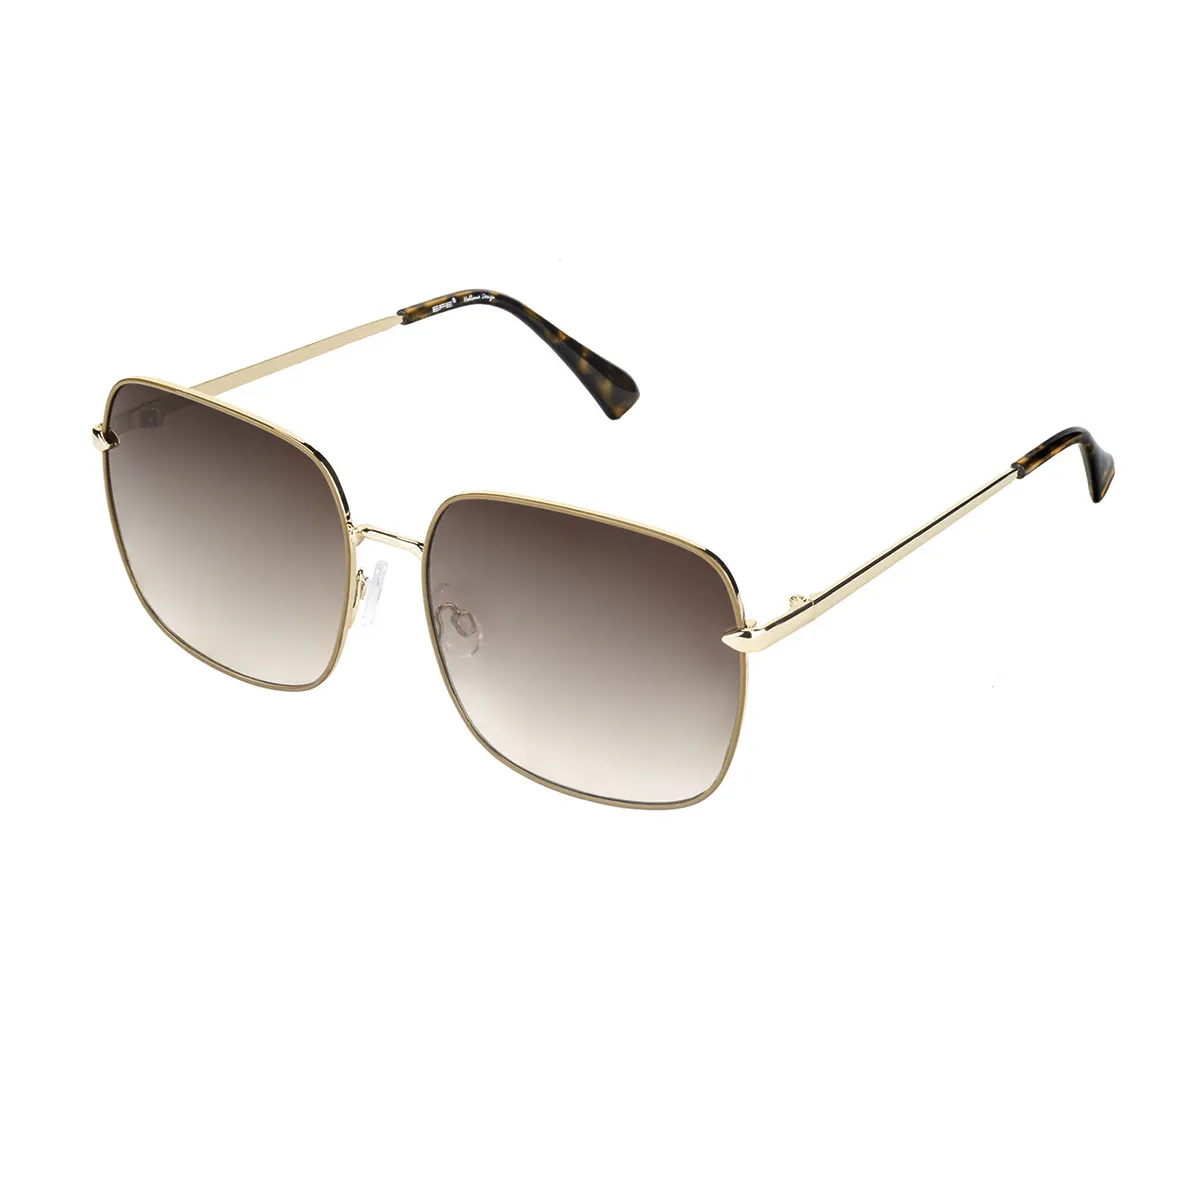 Fashion Square Gold Sunglasses for Women